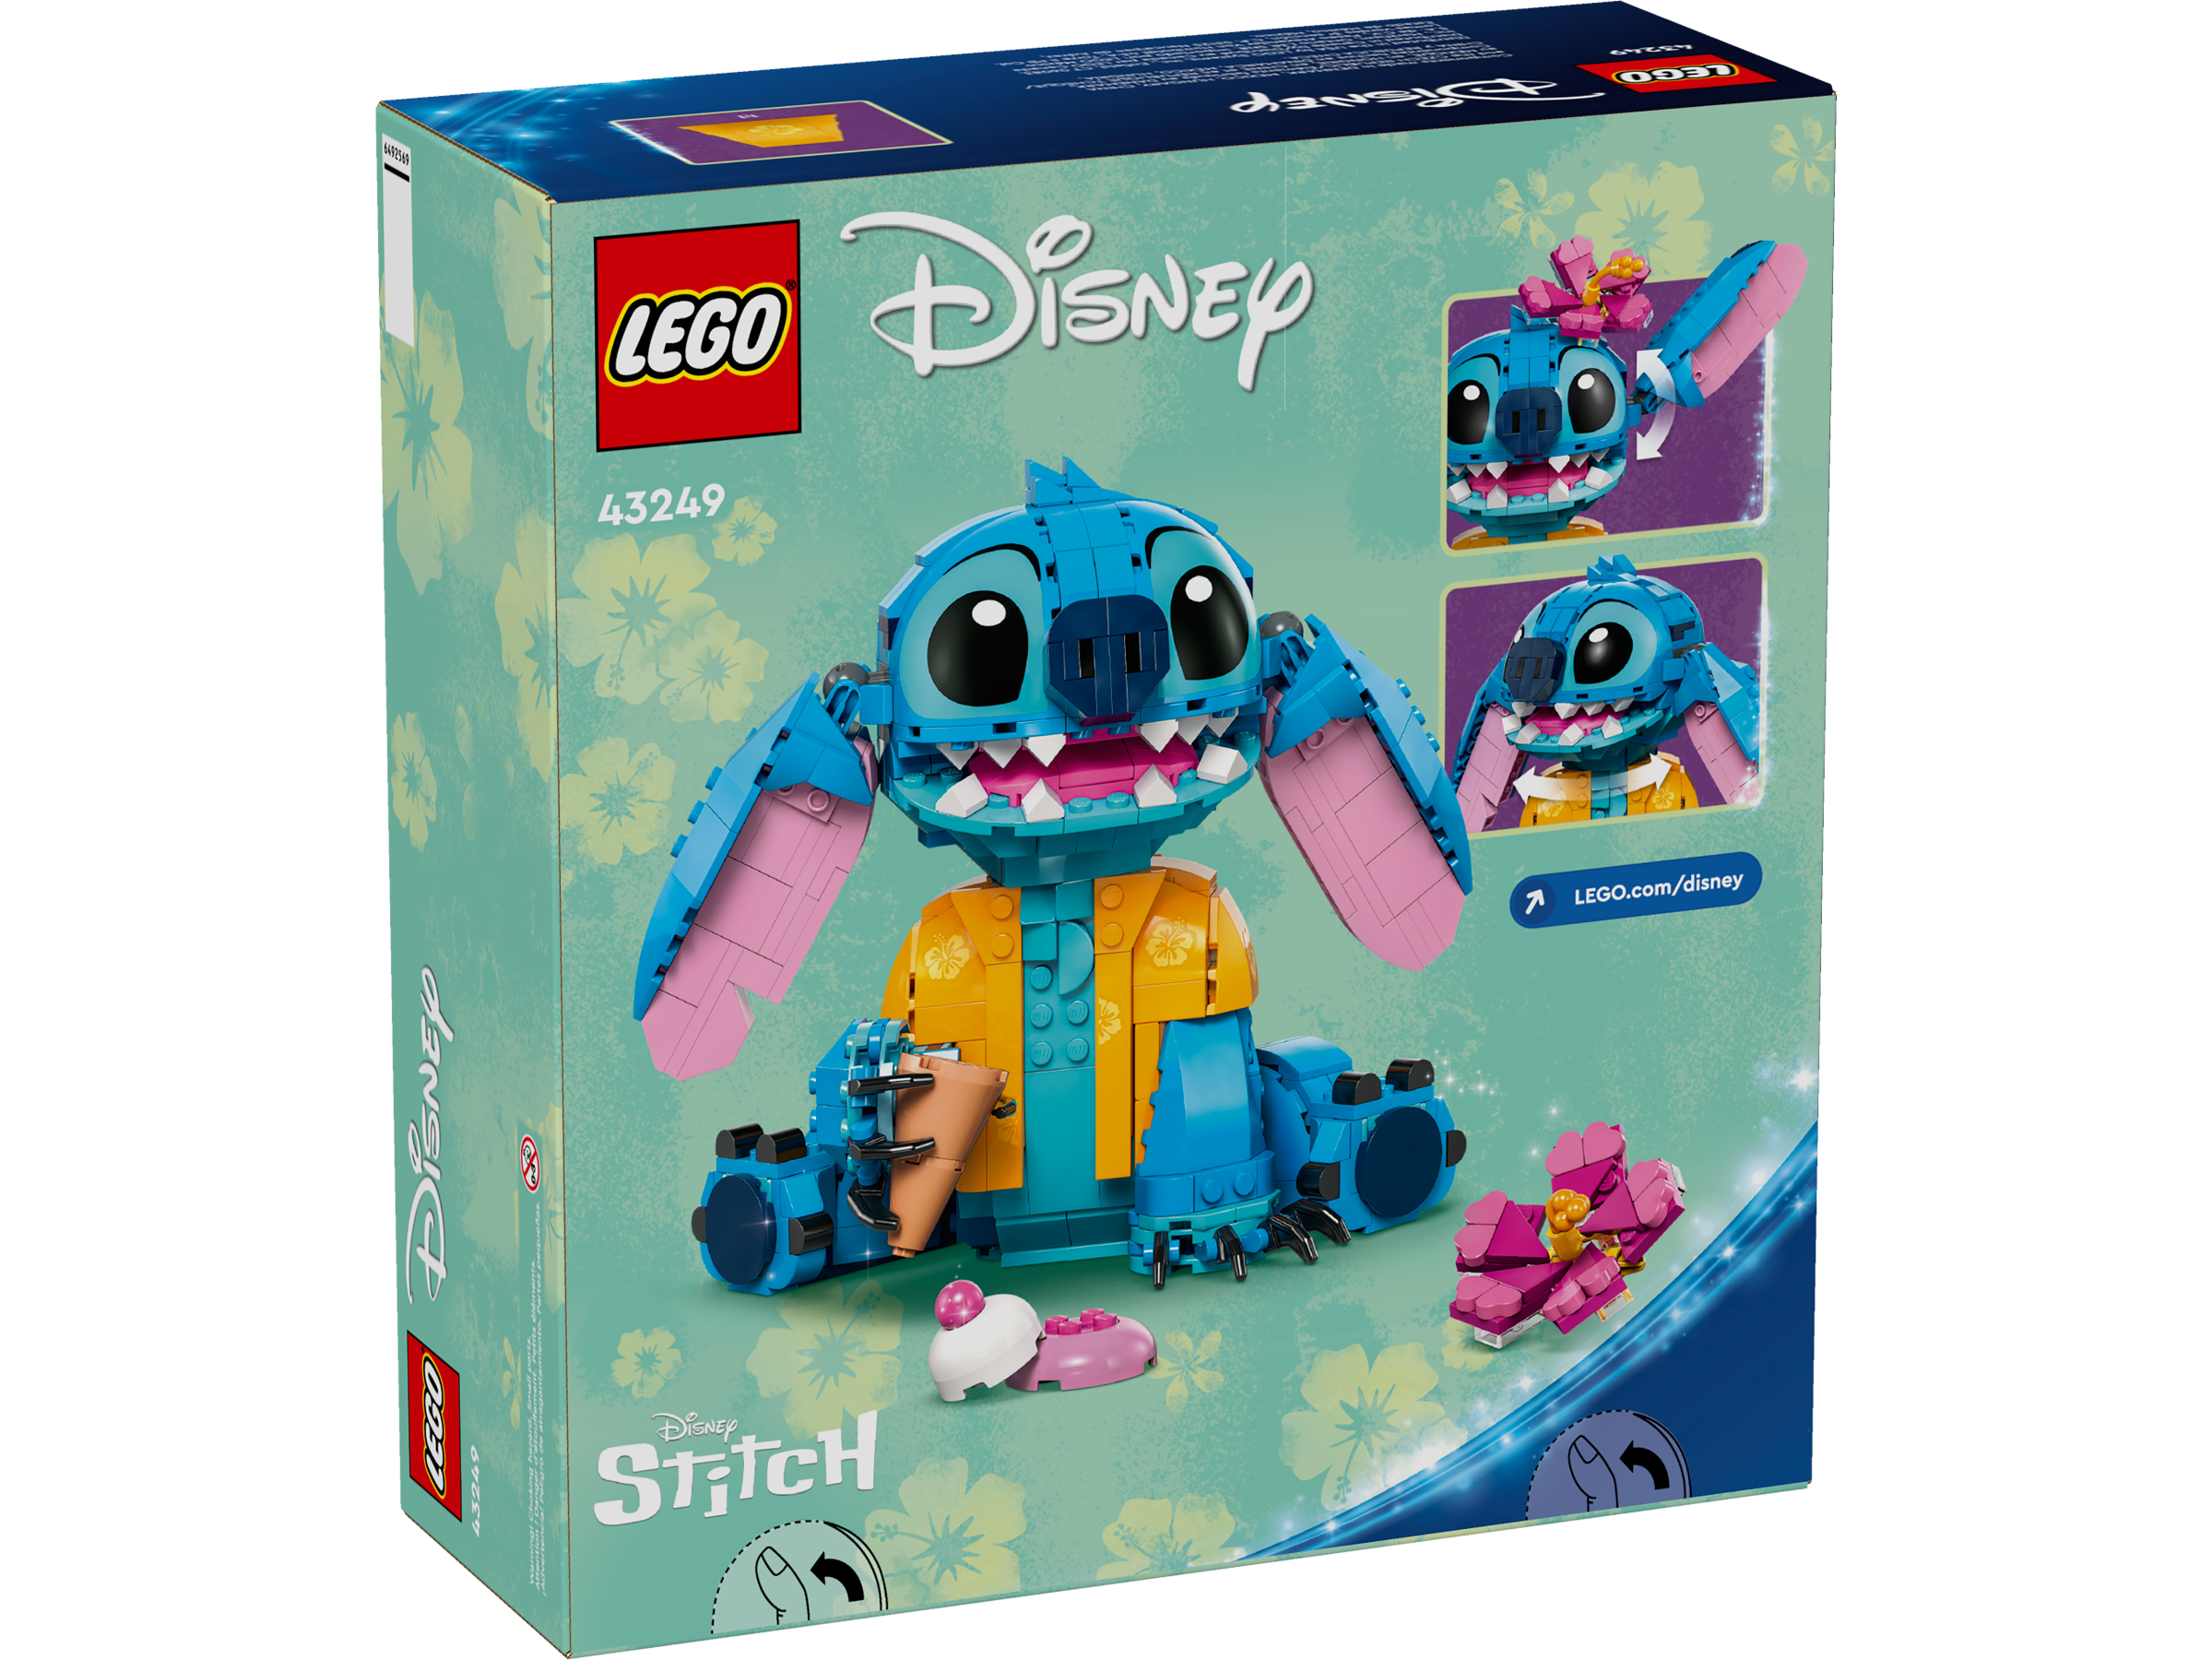 Stitch  Lego creations, Lego projects, Lego disney